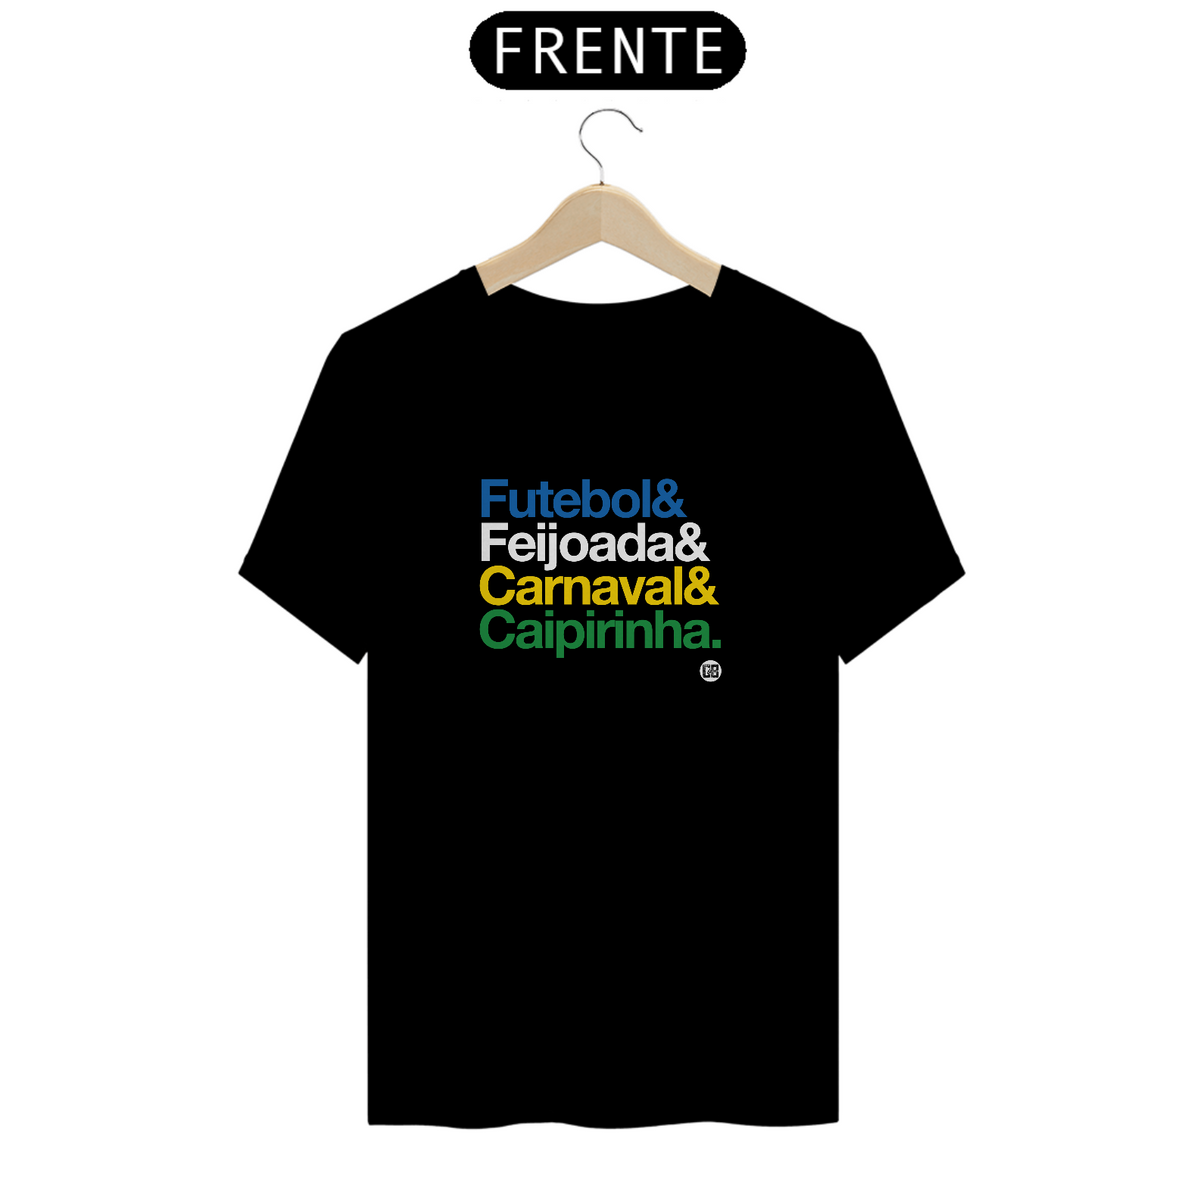 Nome do produto: Futebol & Feijoada & Carnaval & Caipirinha.